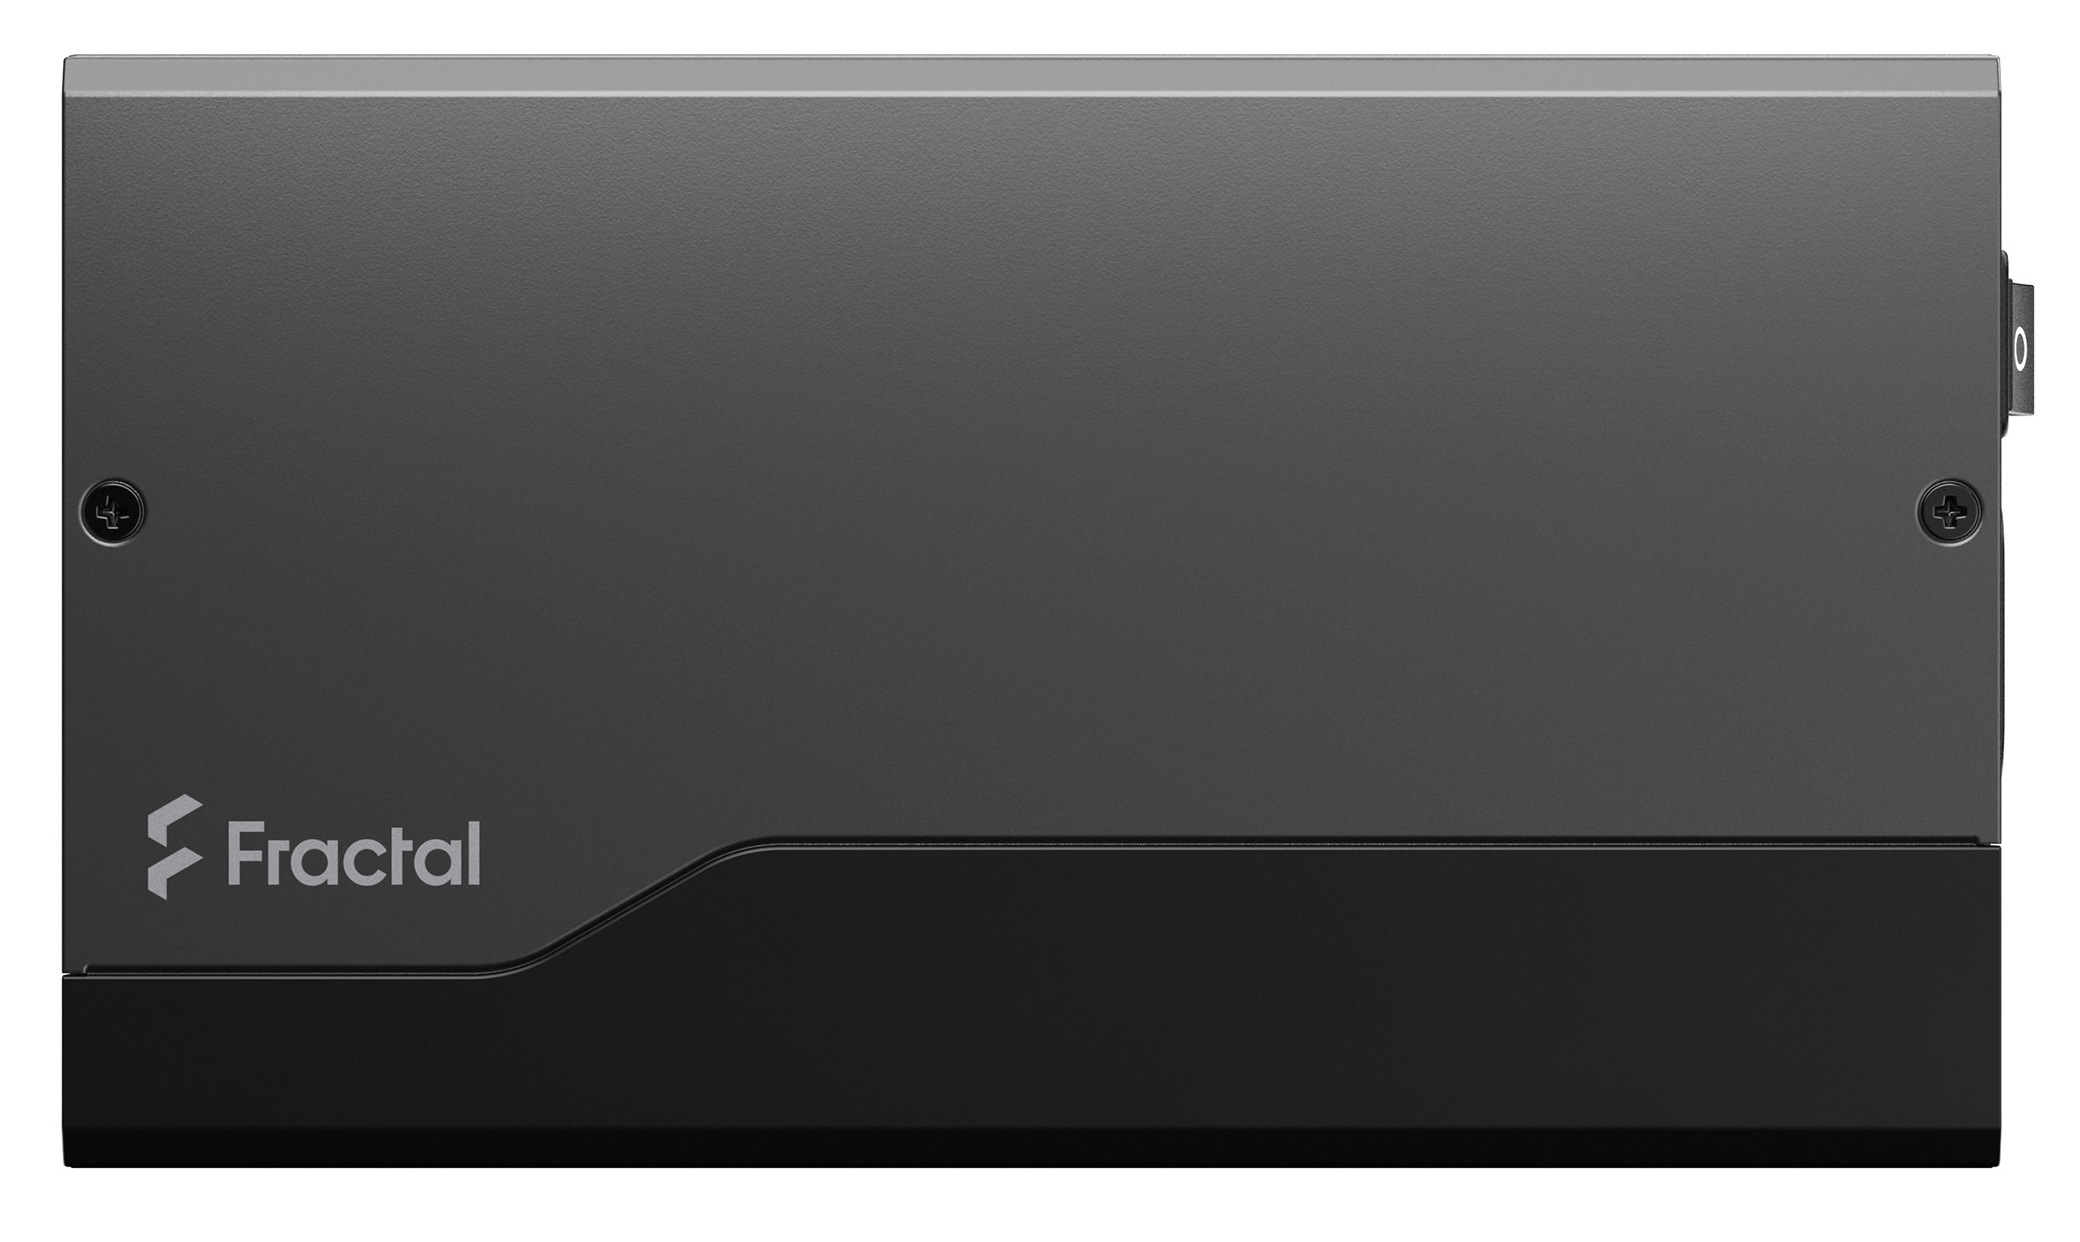 Fractal Design - Fonte Fractal Design Ion+ 2 860W 80+ Platinum Full Modular